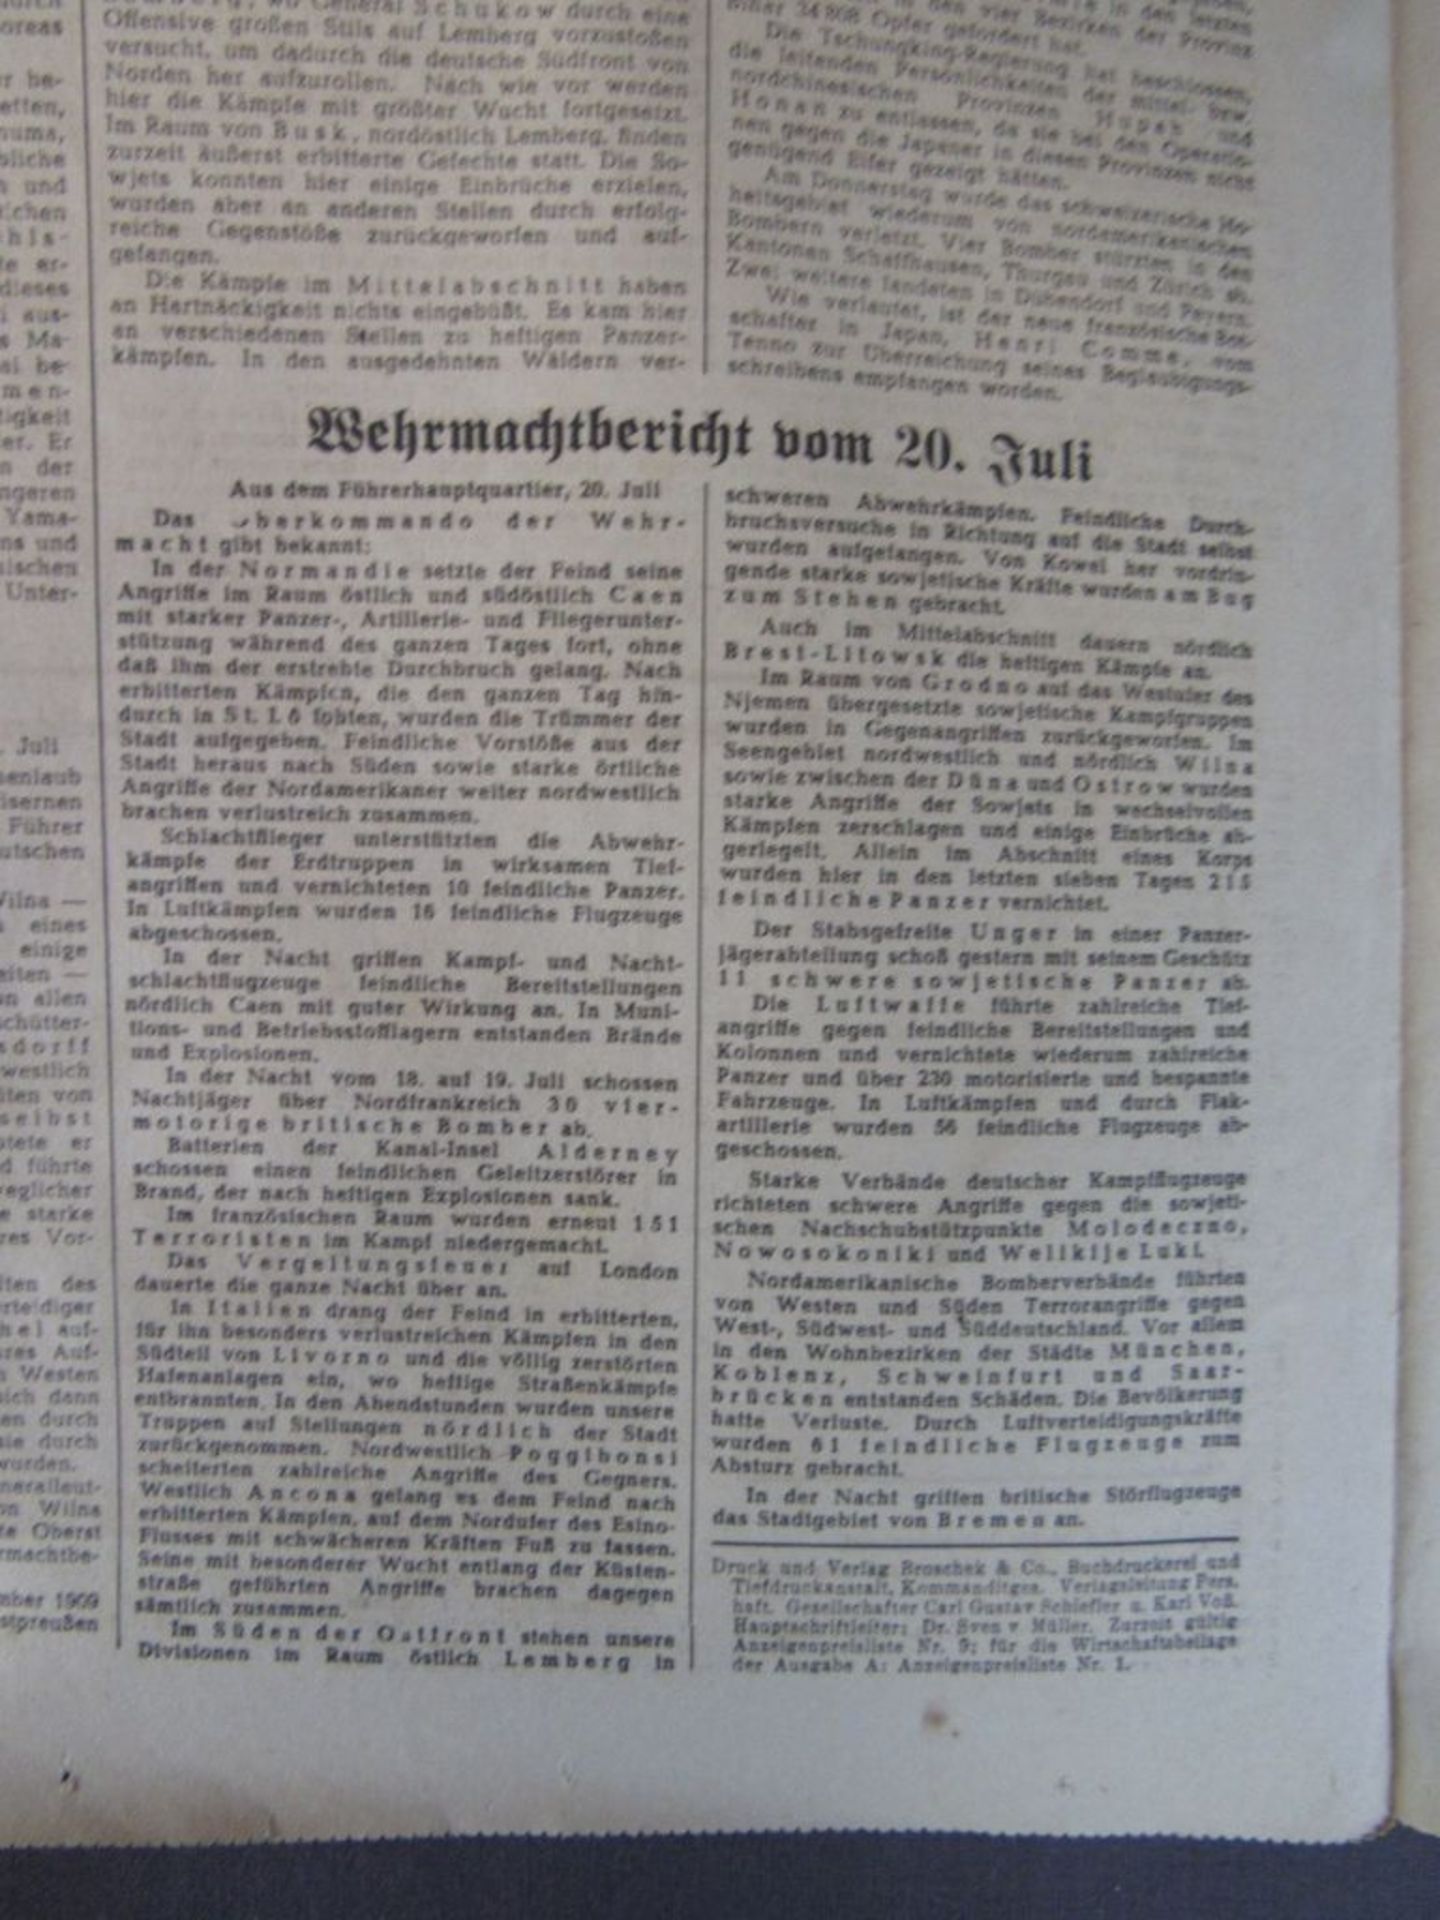 3.Reich Hamburger Fremdenblatt Zeitung - Image 7 of 12